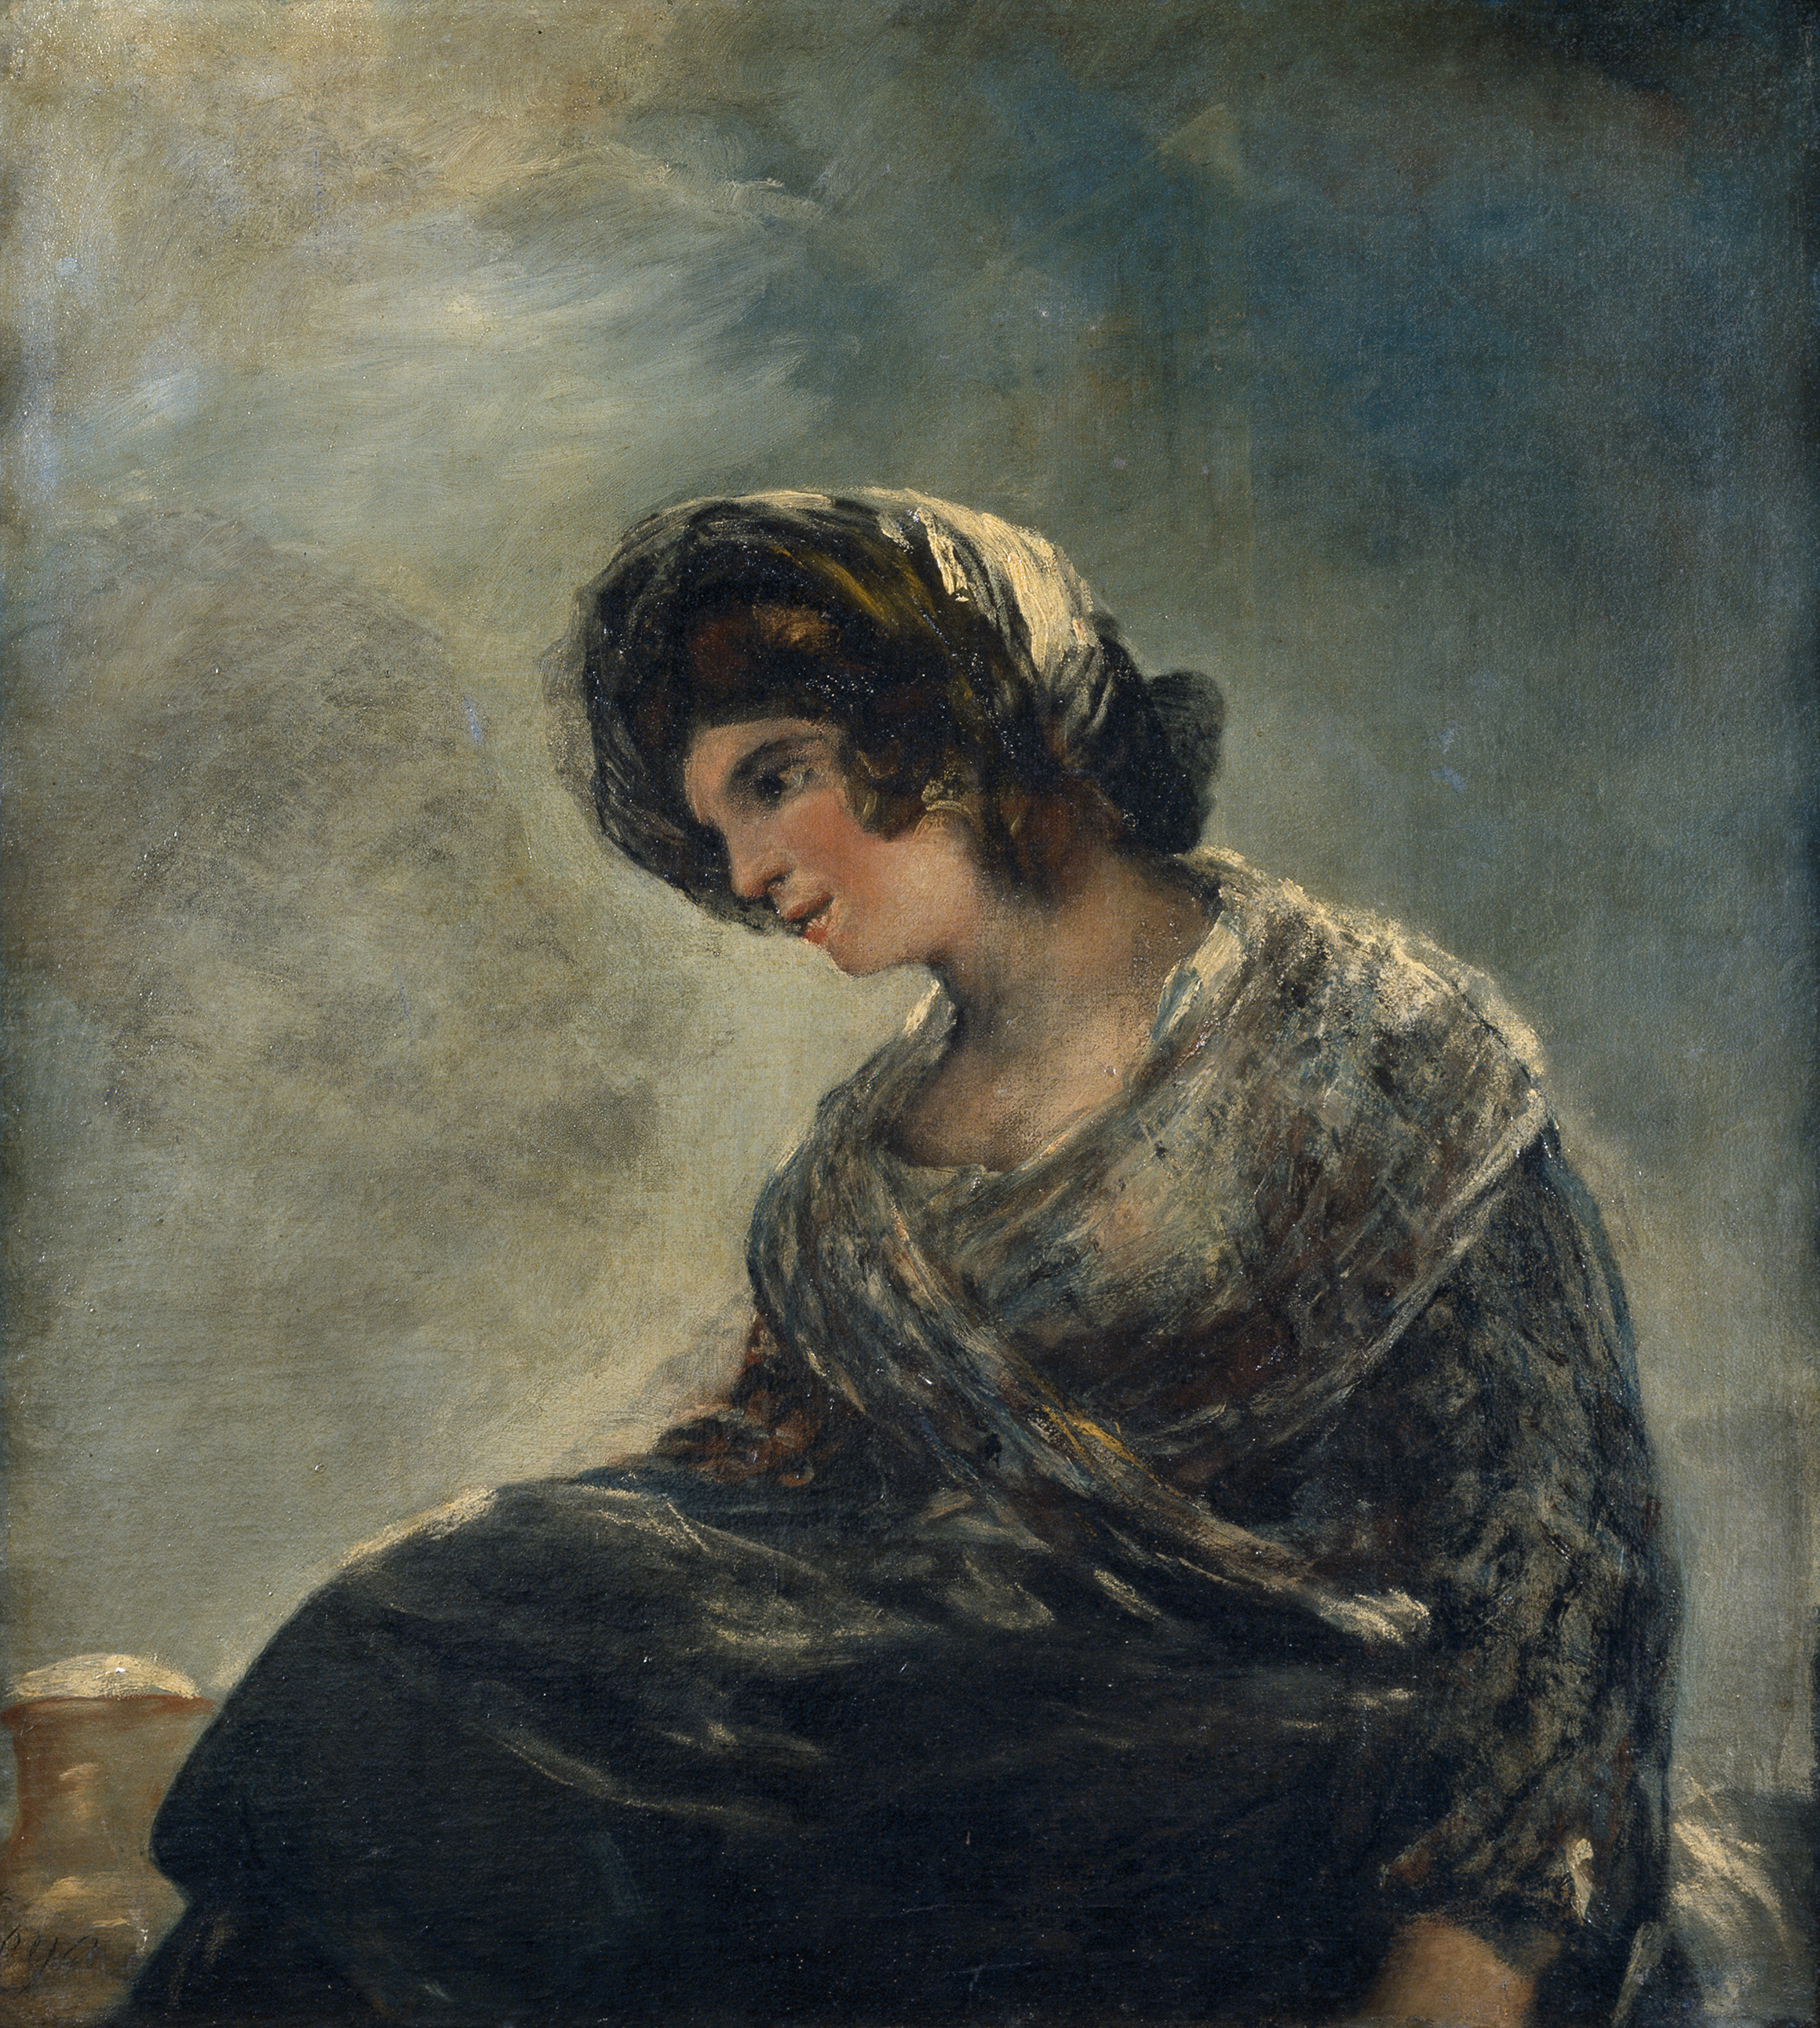 La lechera de Burdeos by Francisco Goya - 1825-27 Museo del Prado